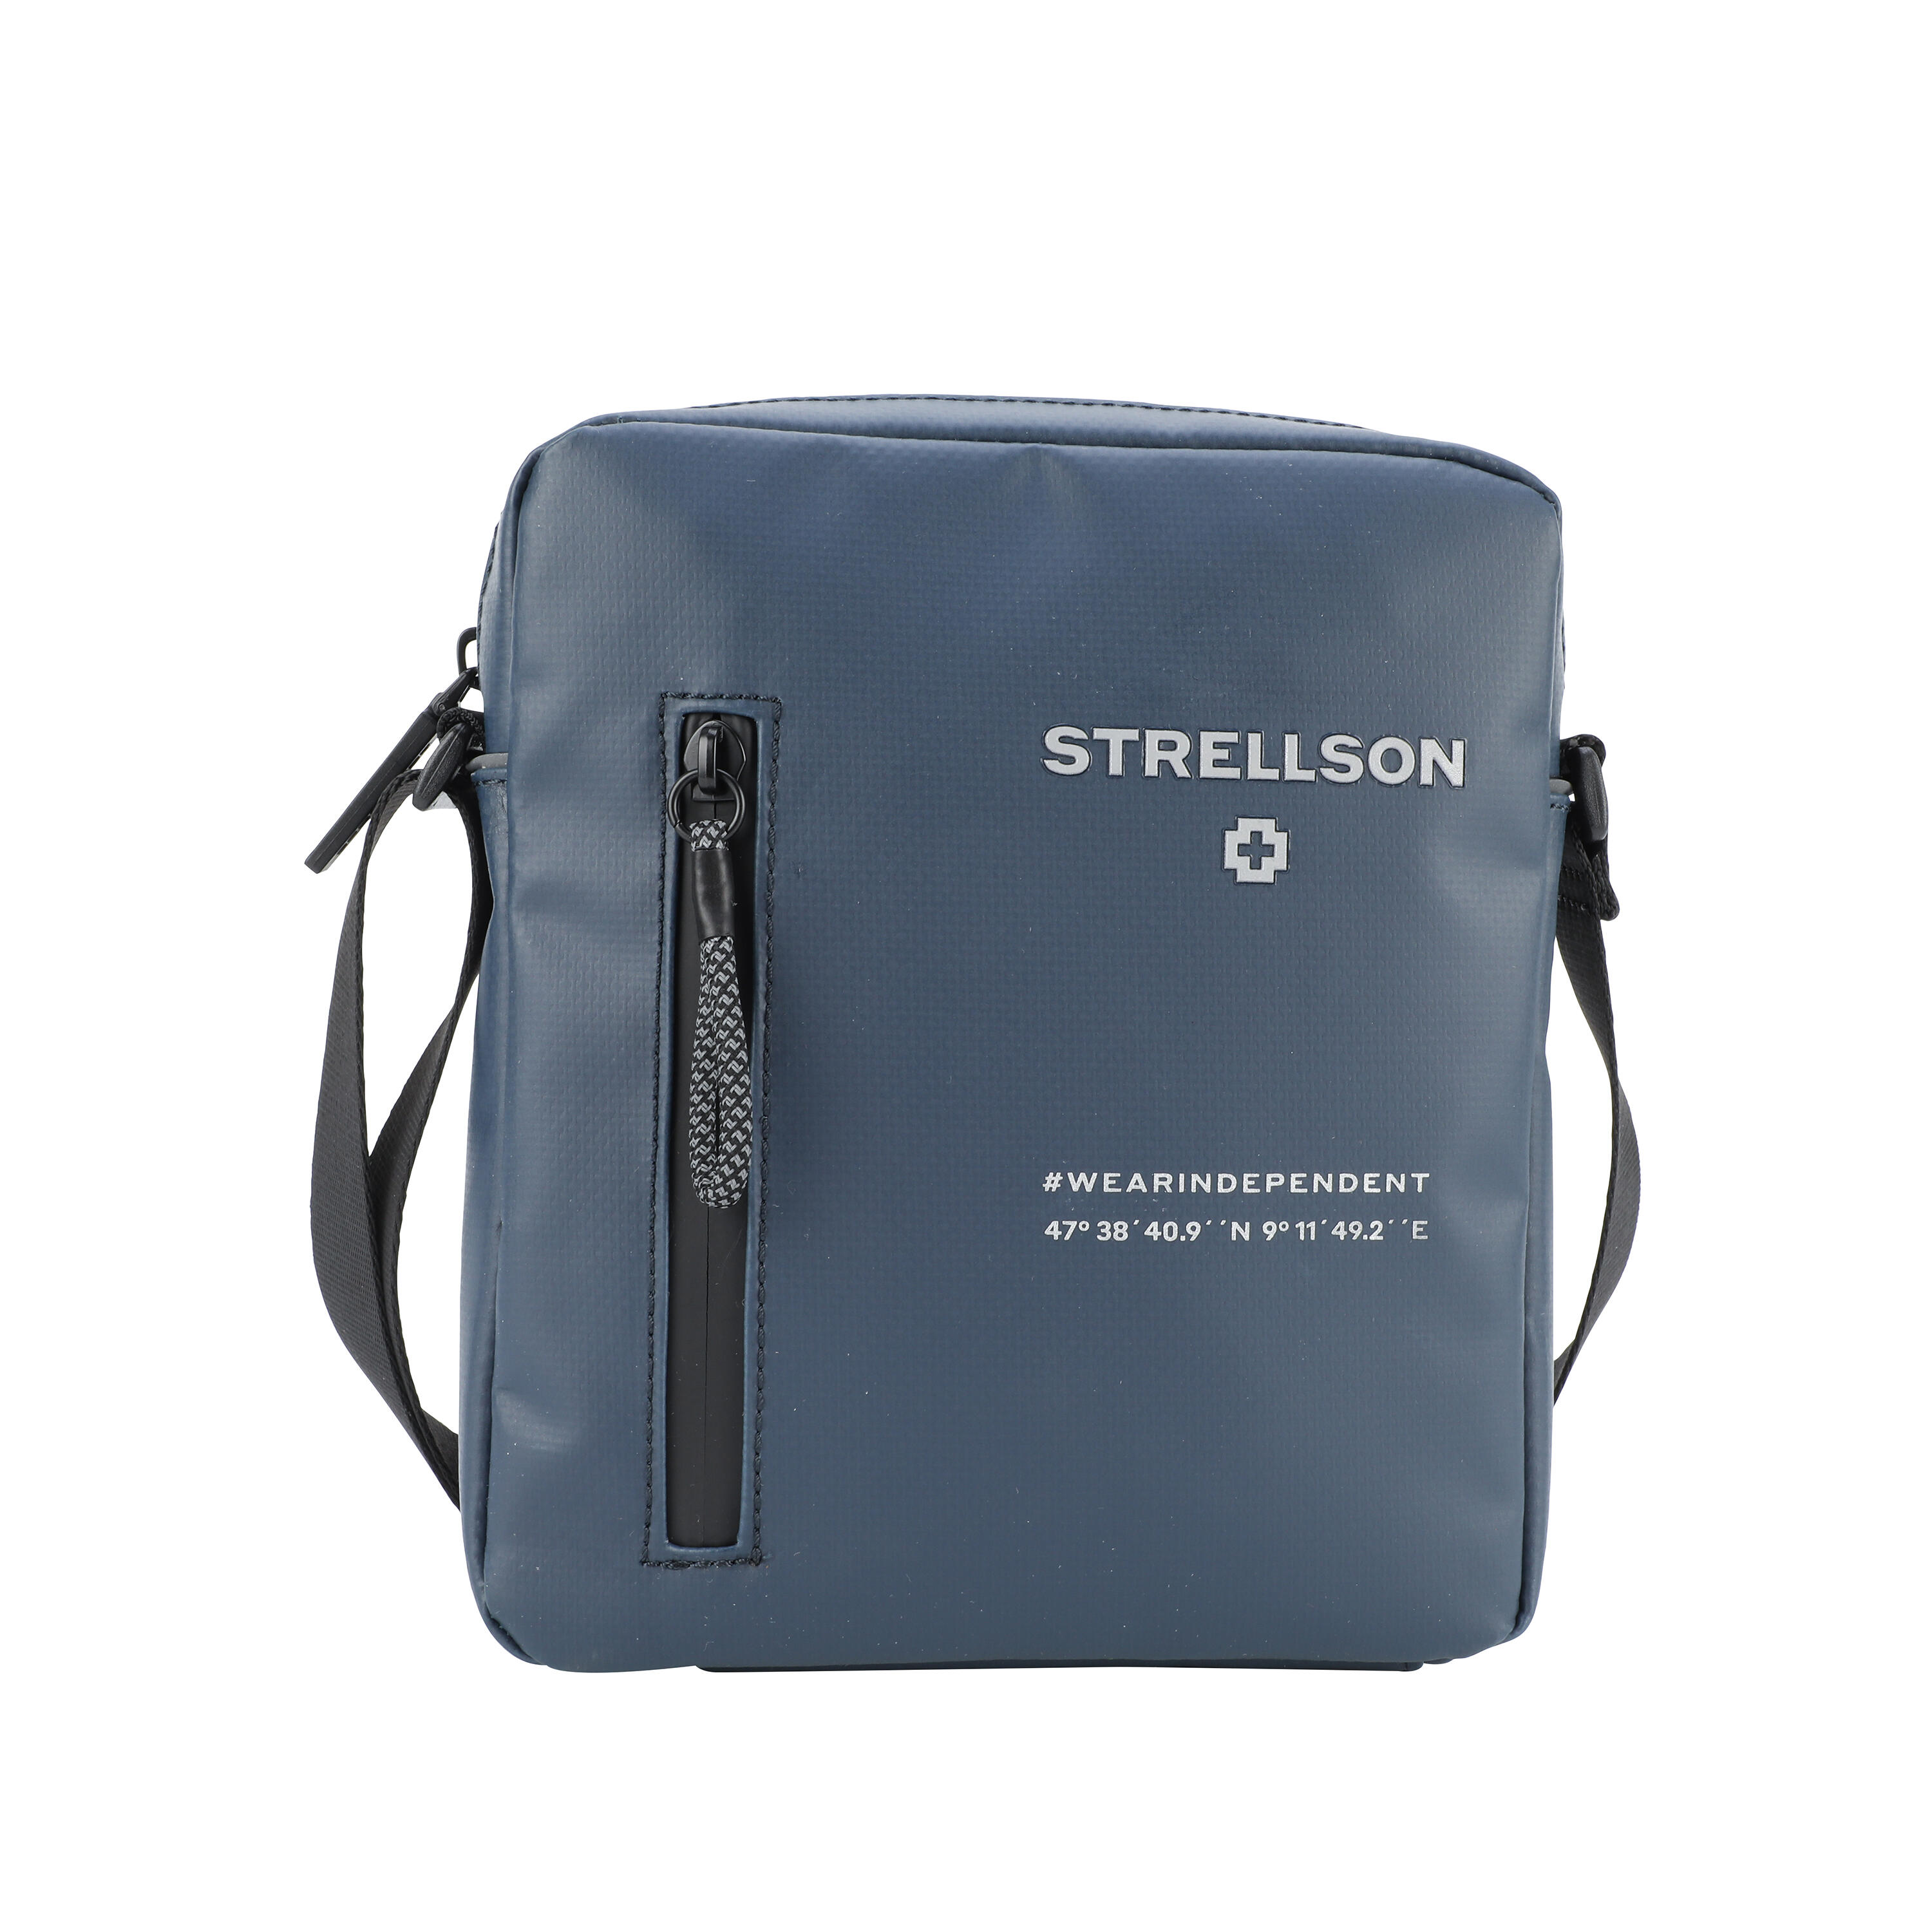 small goods Stockwell Xsvz | Lederwaren & bags 2.0 men leather Marcus Küper Shoulderbag Strellson